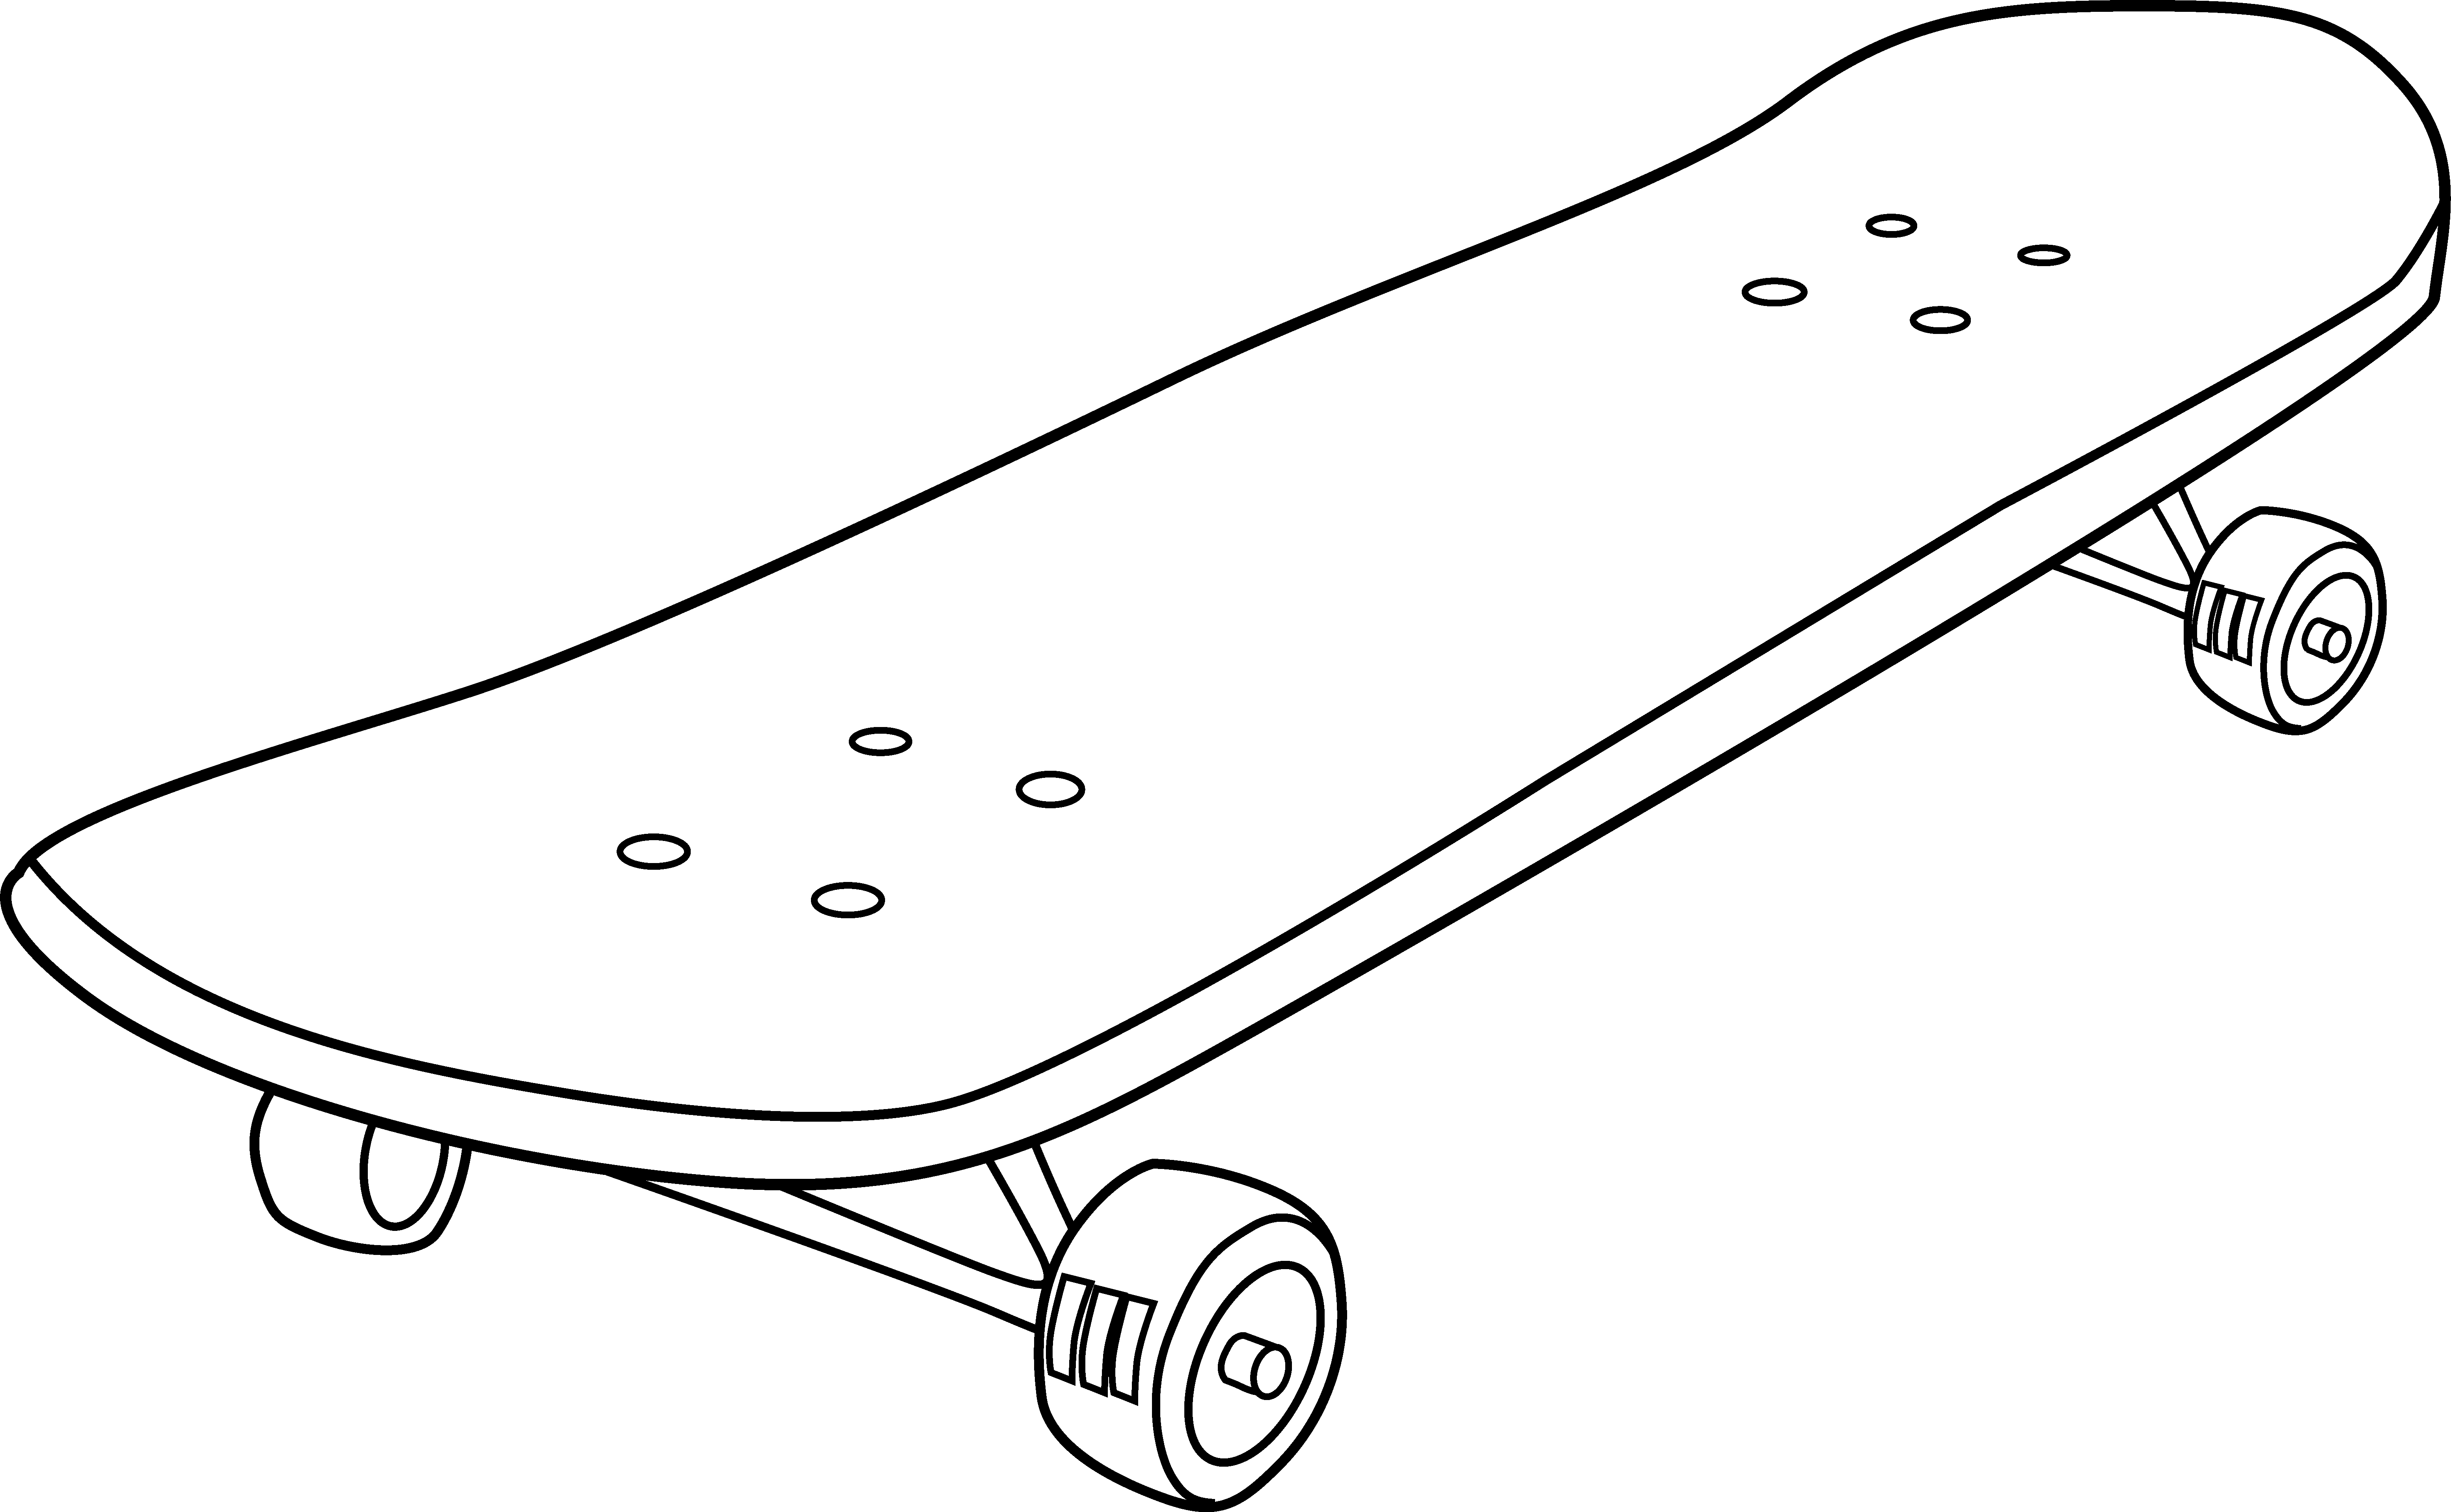 Malvorlage: Skateboard / Skateboard (Transport) #139289 - Kostenlose Malvorlagen zum Ausdrucken